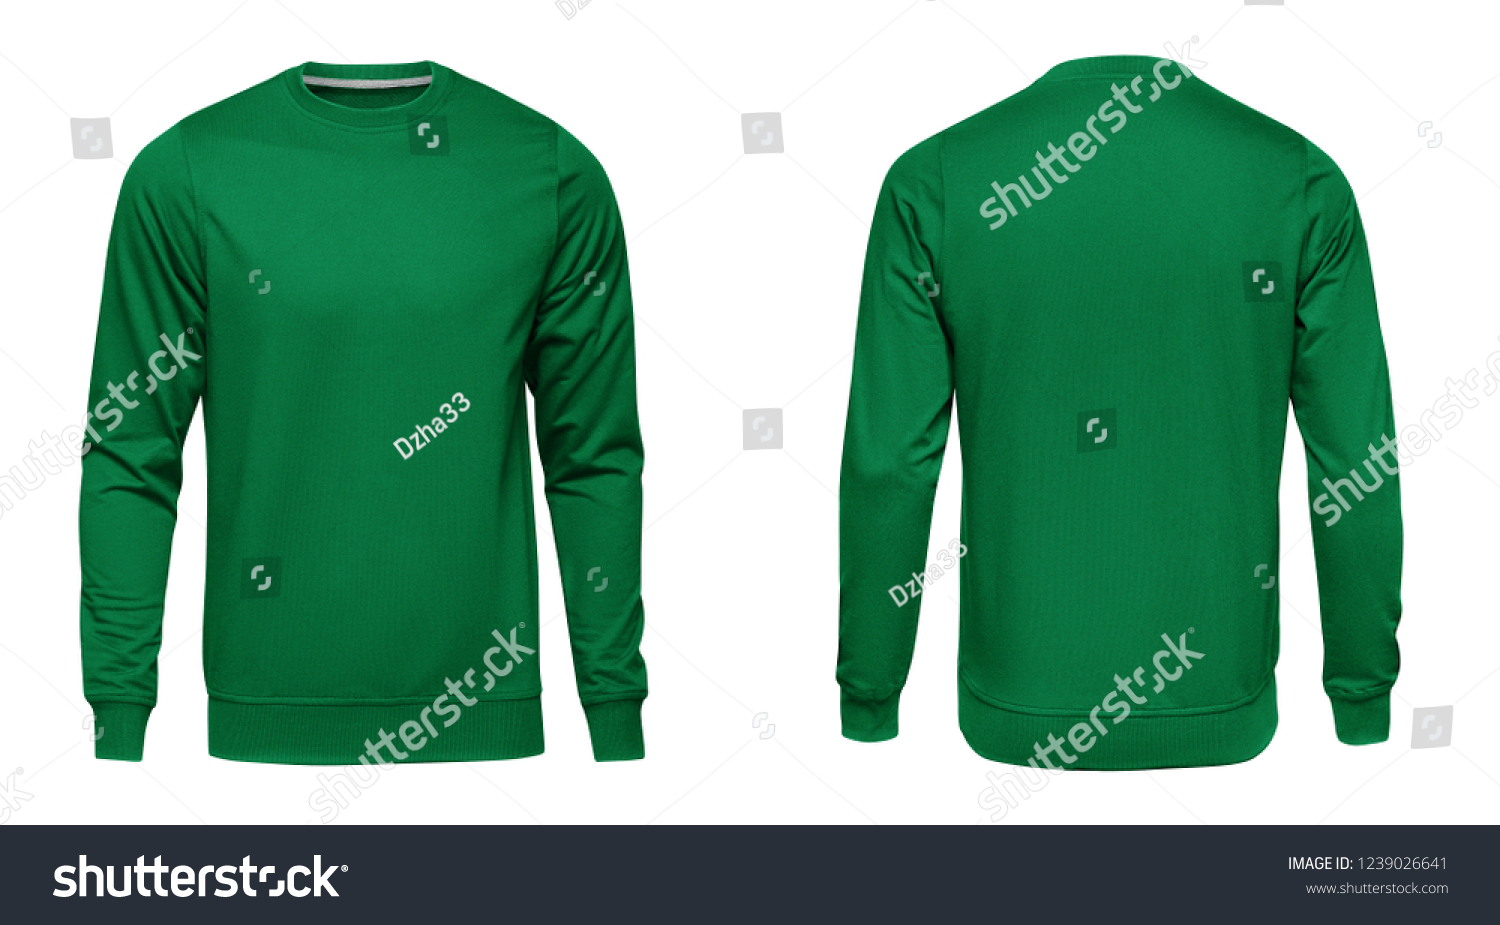 Green sweatshirt Images, Stock Photos & Vectors | Shutterstock